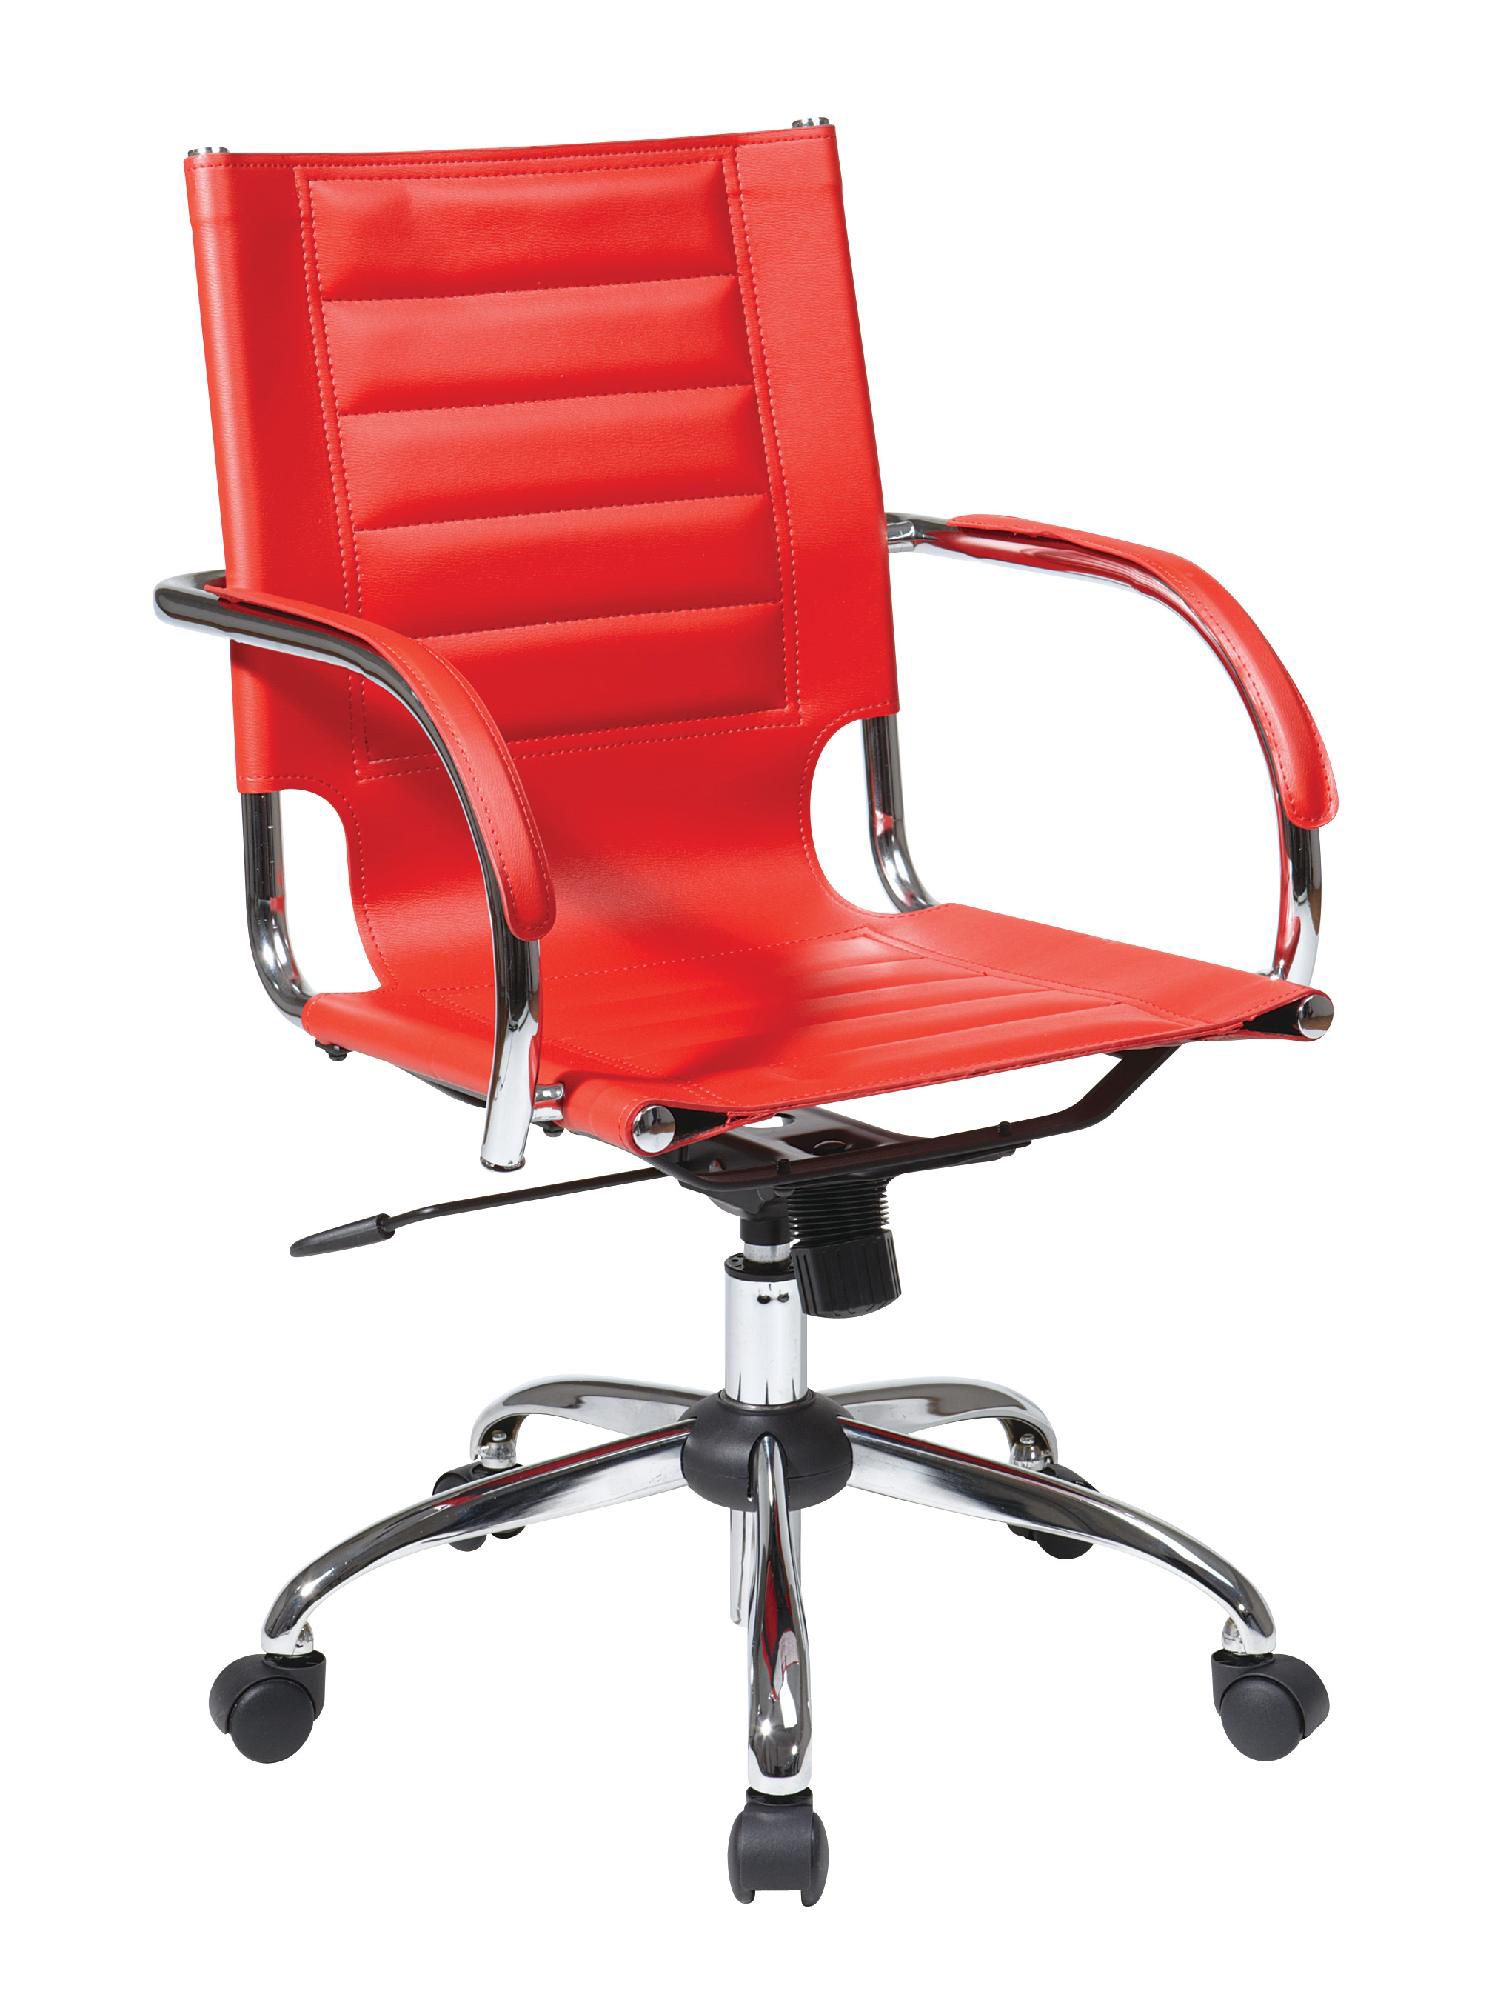 Avenue Six Trinadad Desk Chair, Red